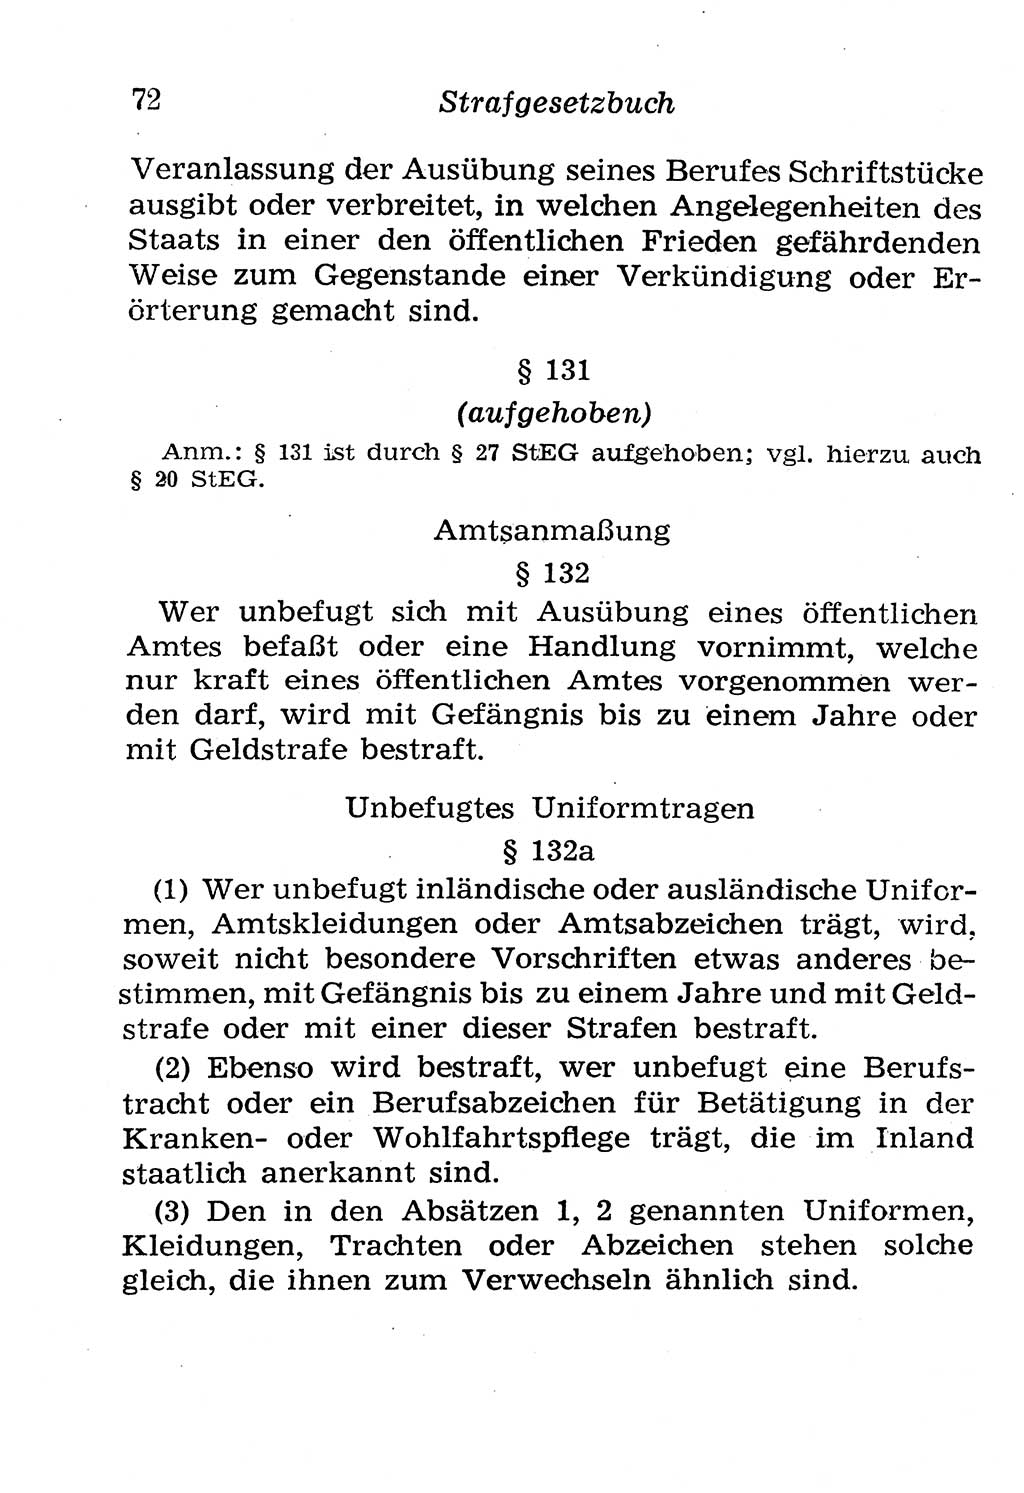 Strafgesetzbuch (StGB) und andere Strafgesetze [Deutsche Demokratische Republik (DDR)] 1958, Seite 72 (StGB Strafges. DDR 1958, S. 72)